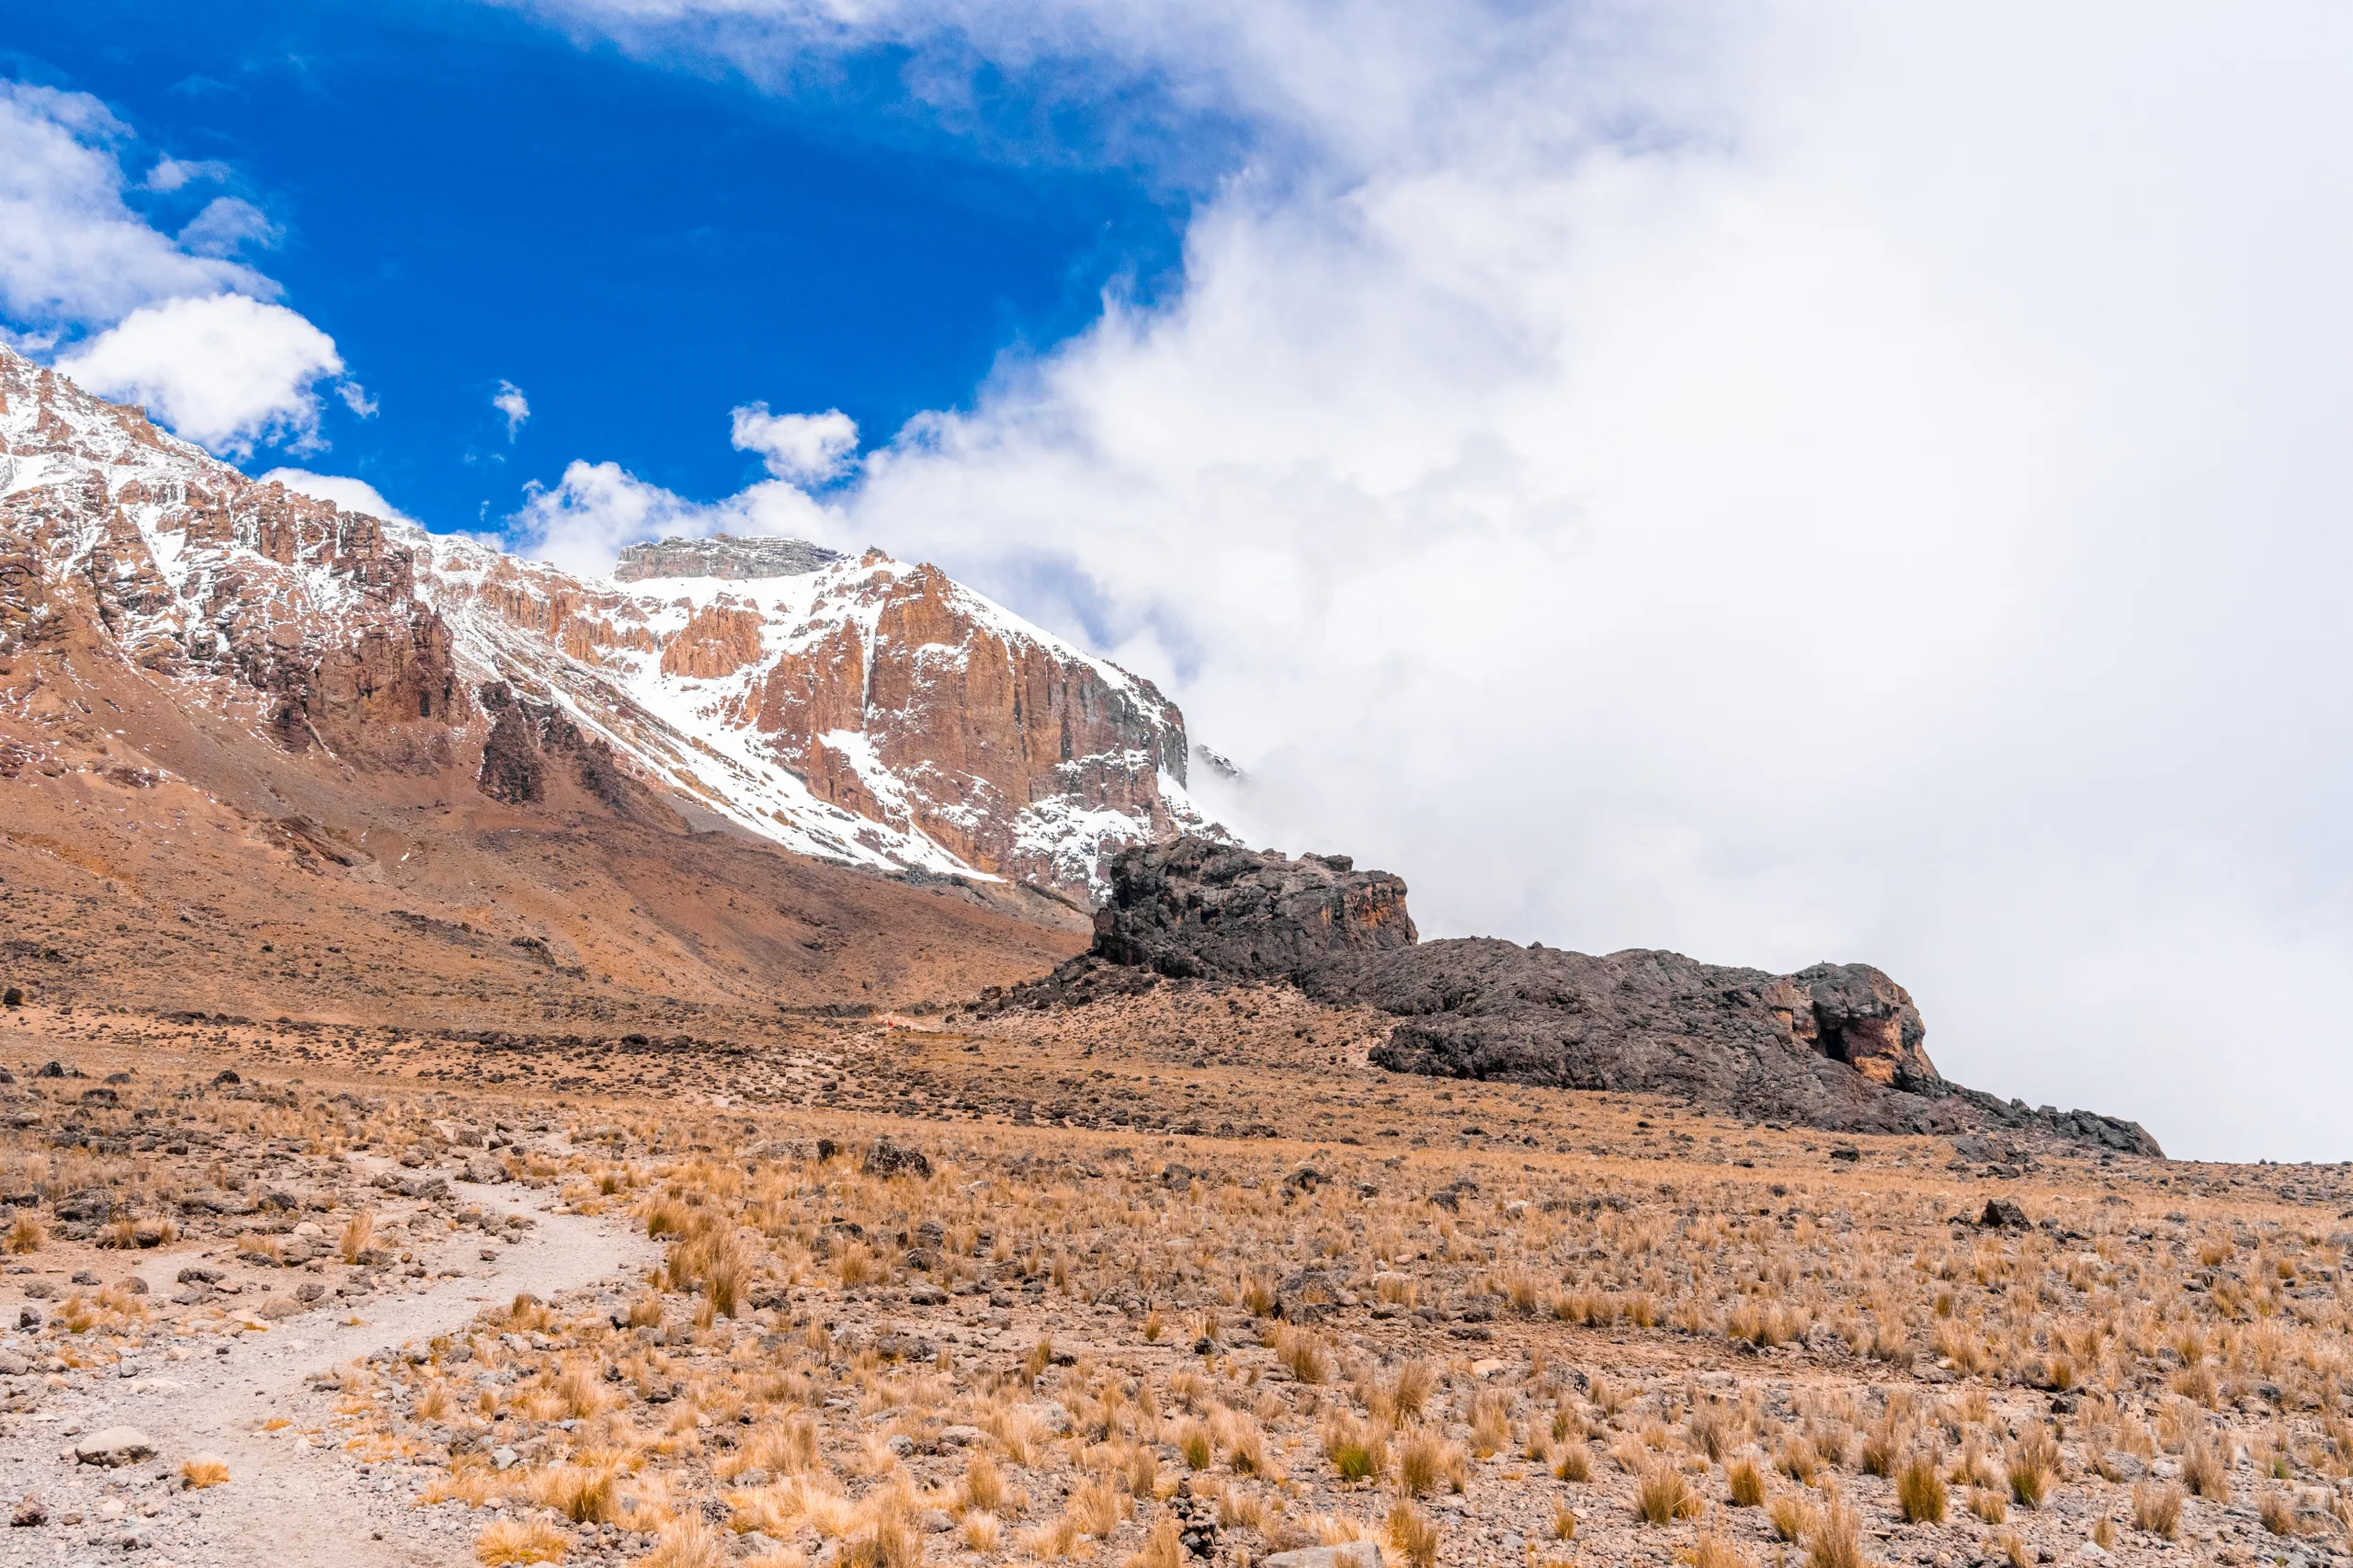 kilimanjaro trekking tour